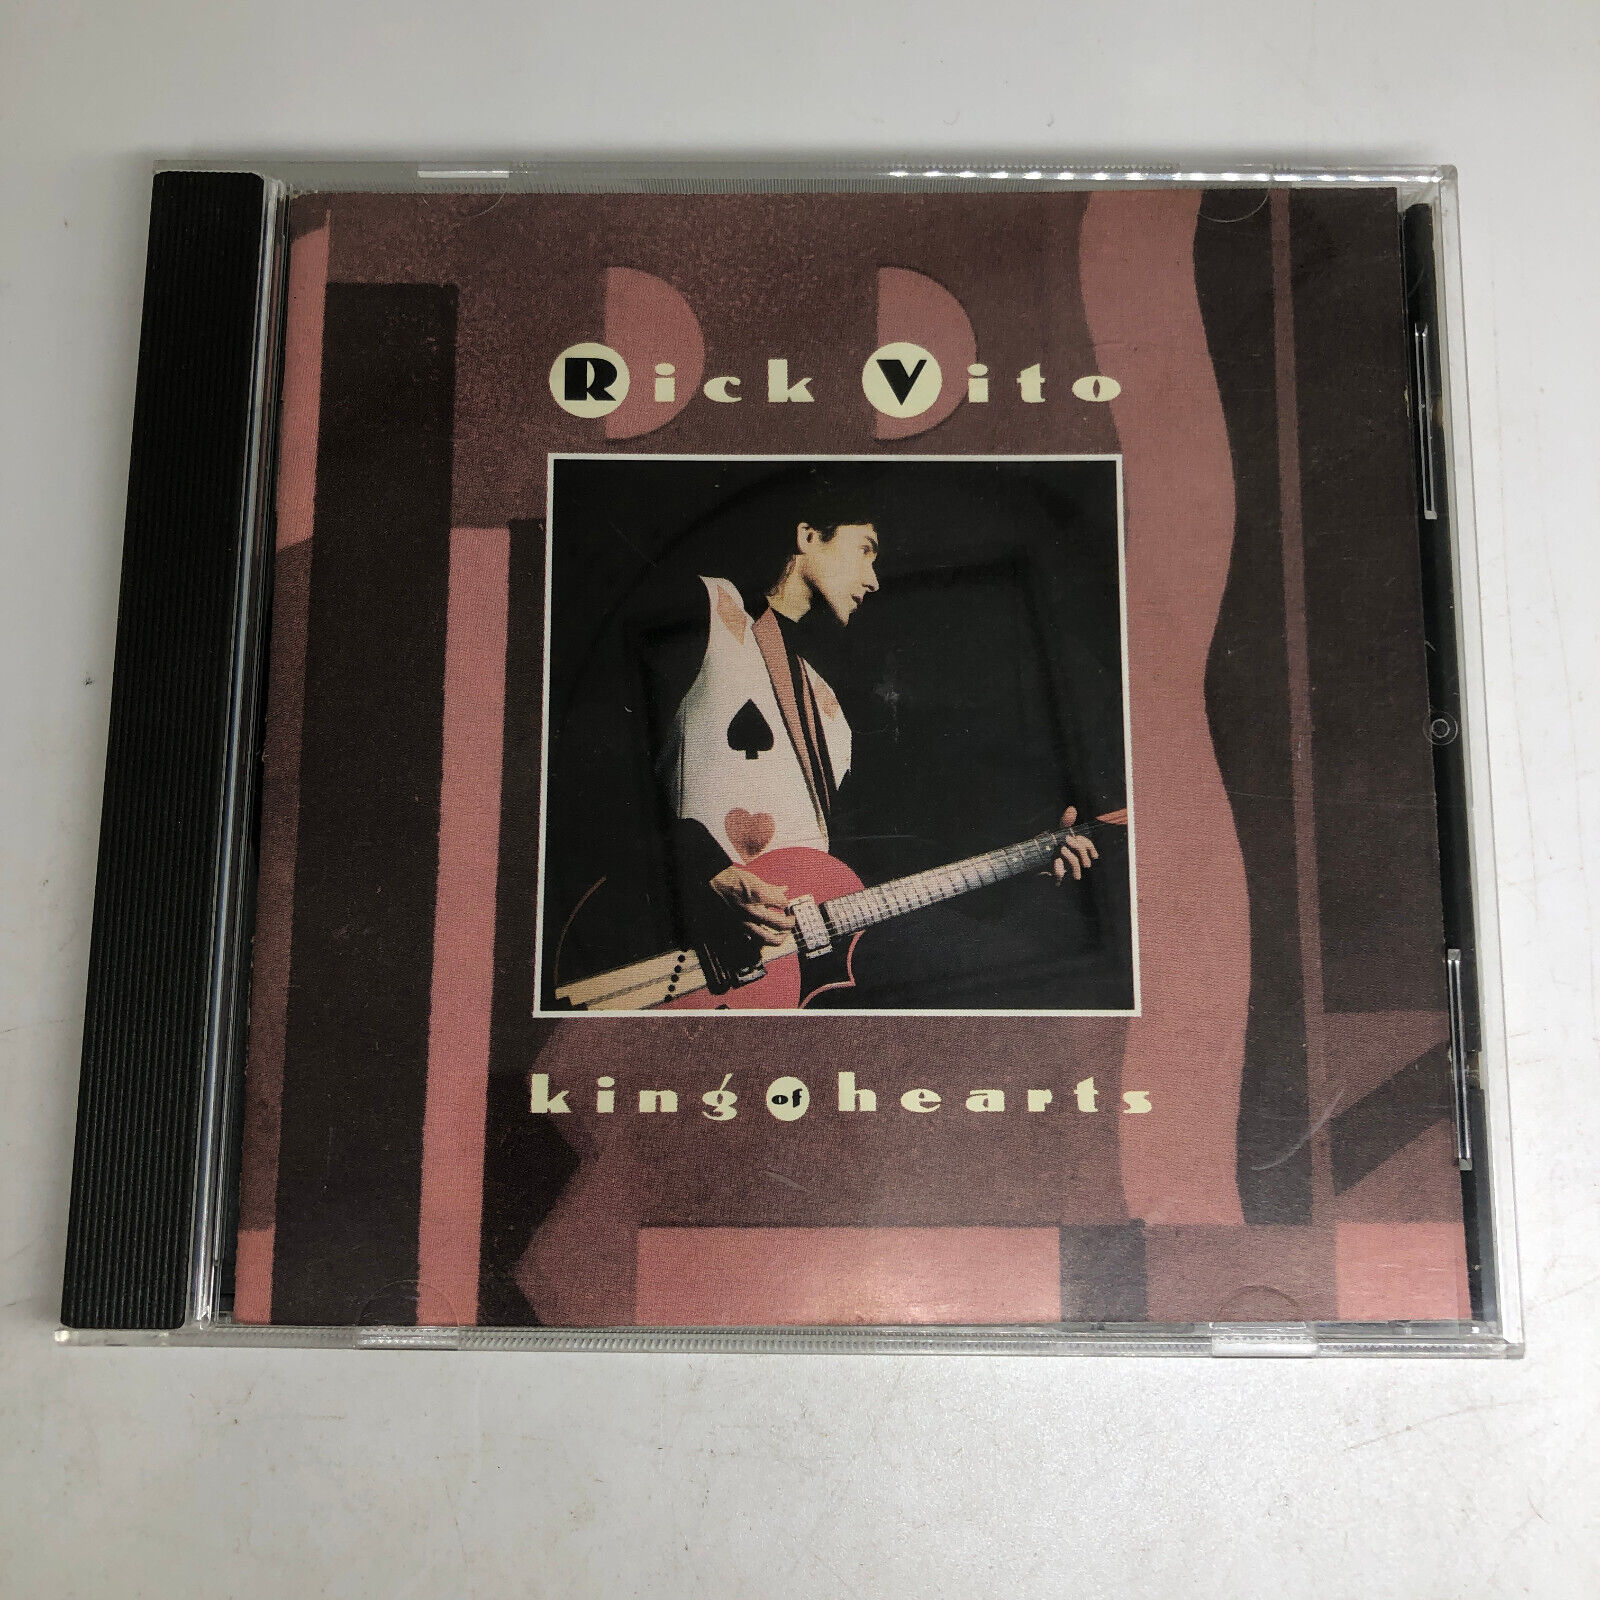 King of Hearts by Rick Vito (CD, Feb-1992, Modern)